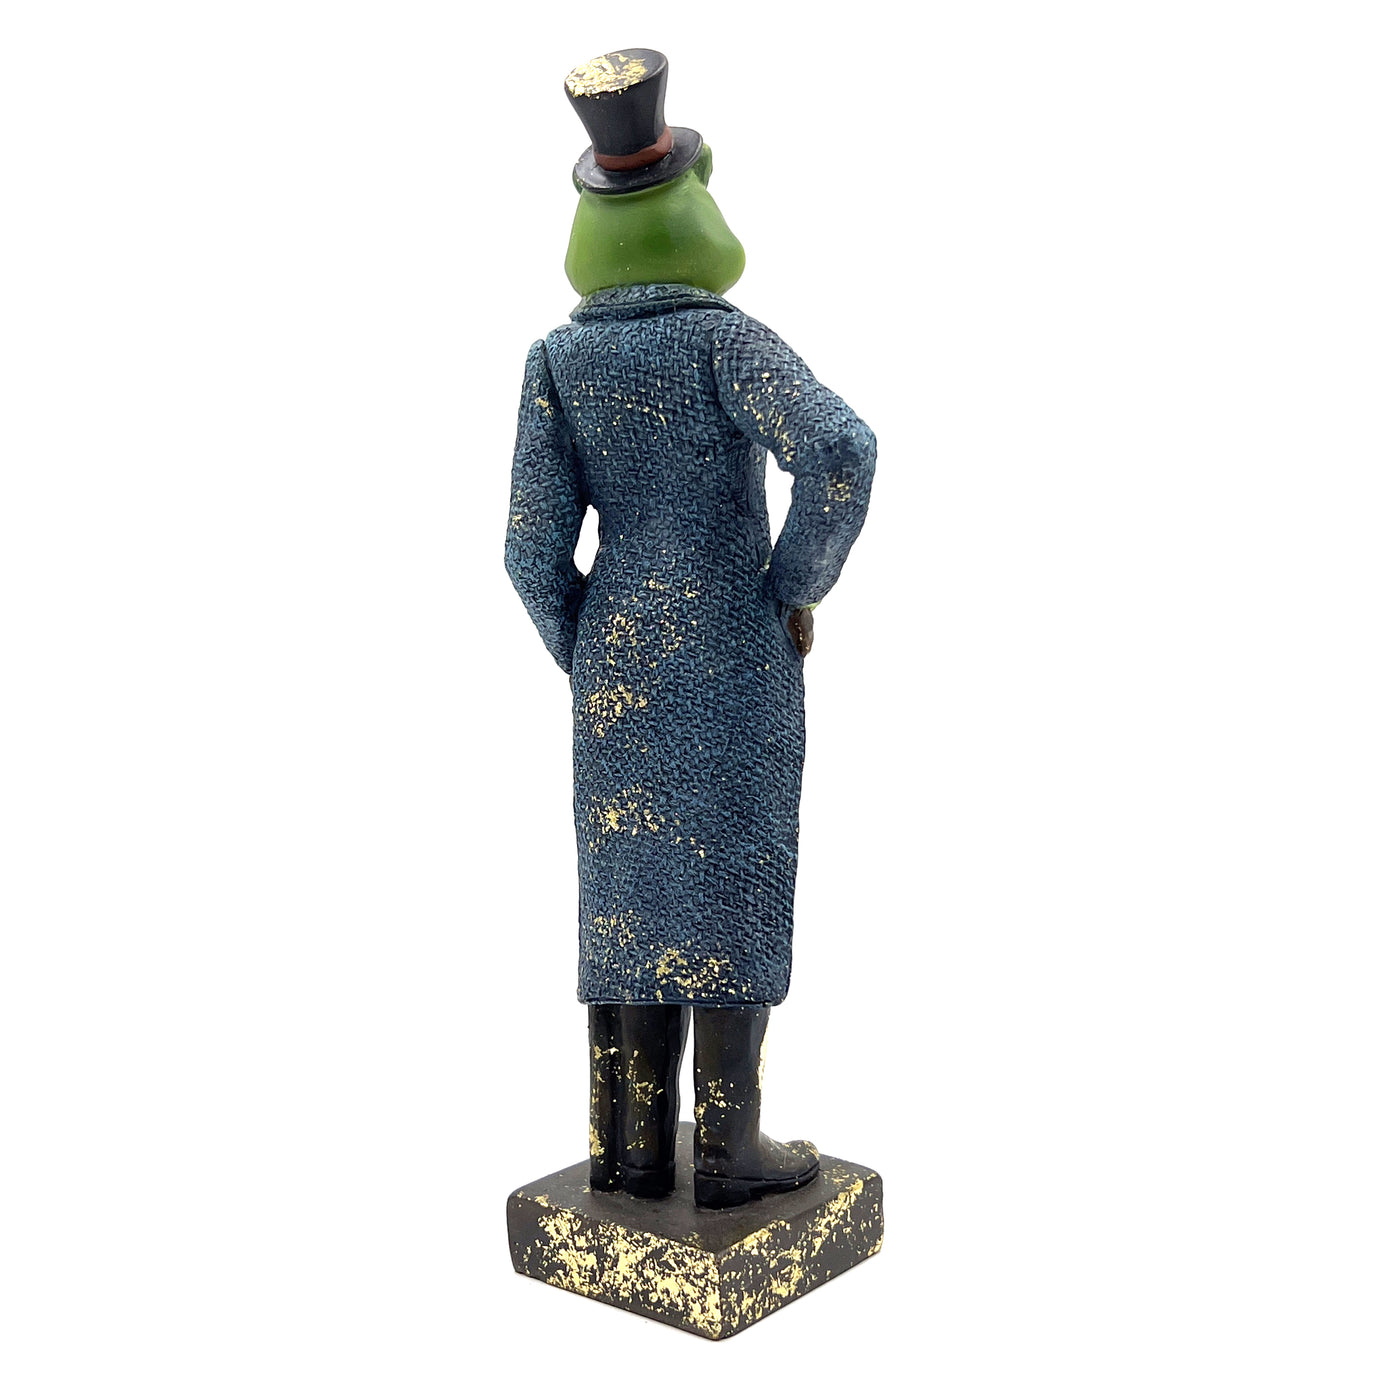 Dapper Toad Ornament